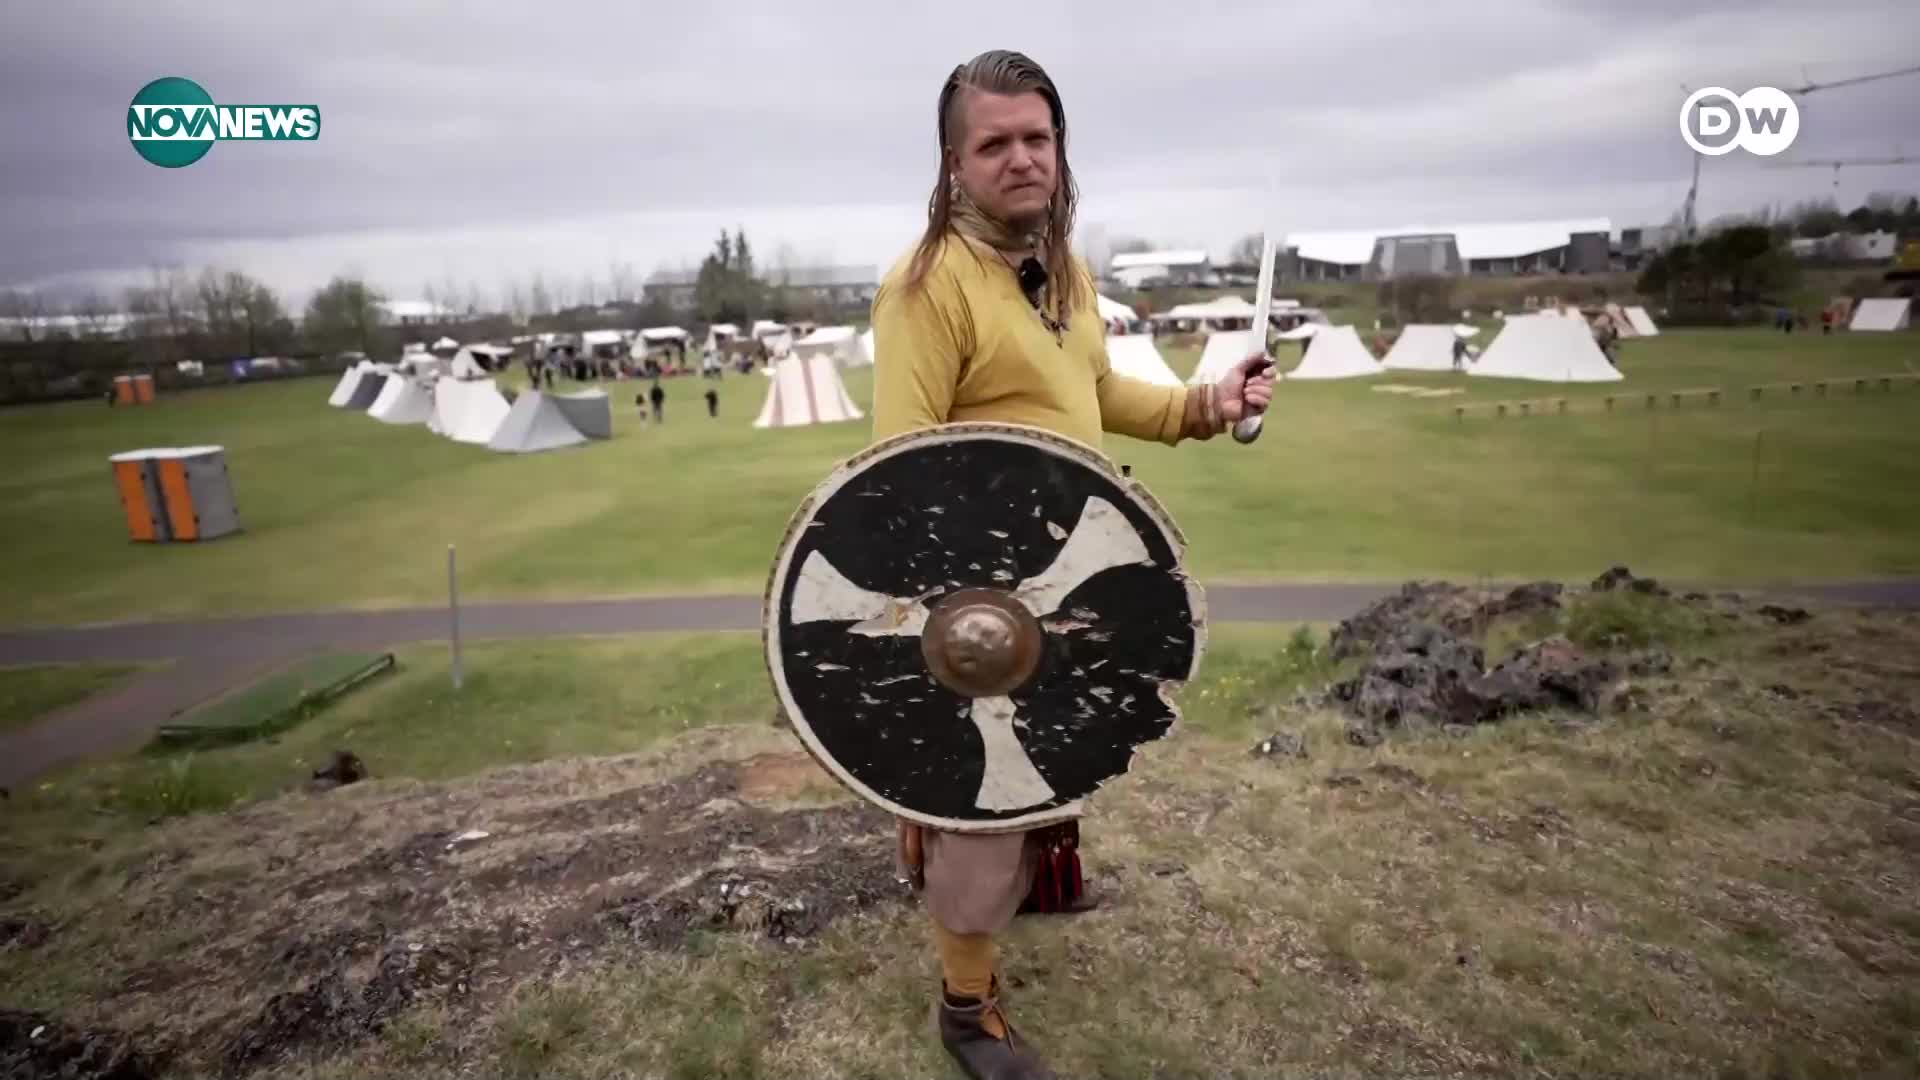 Животът на викингите: Фестивал в Исландия показва бита на страховитите мъже